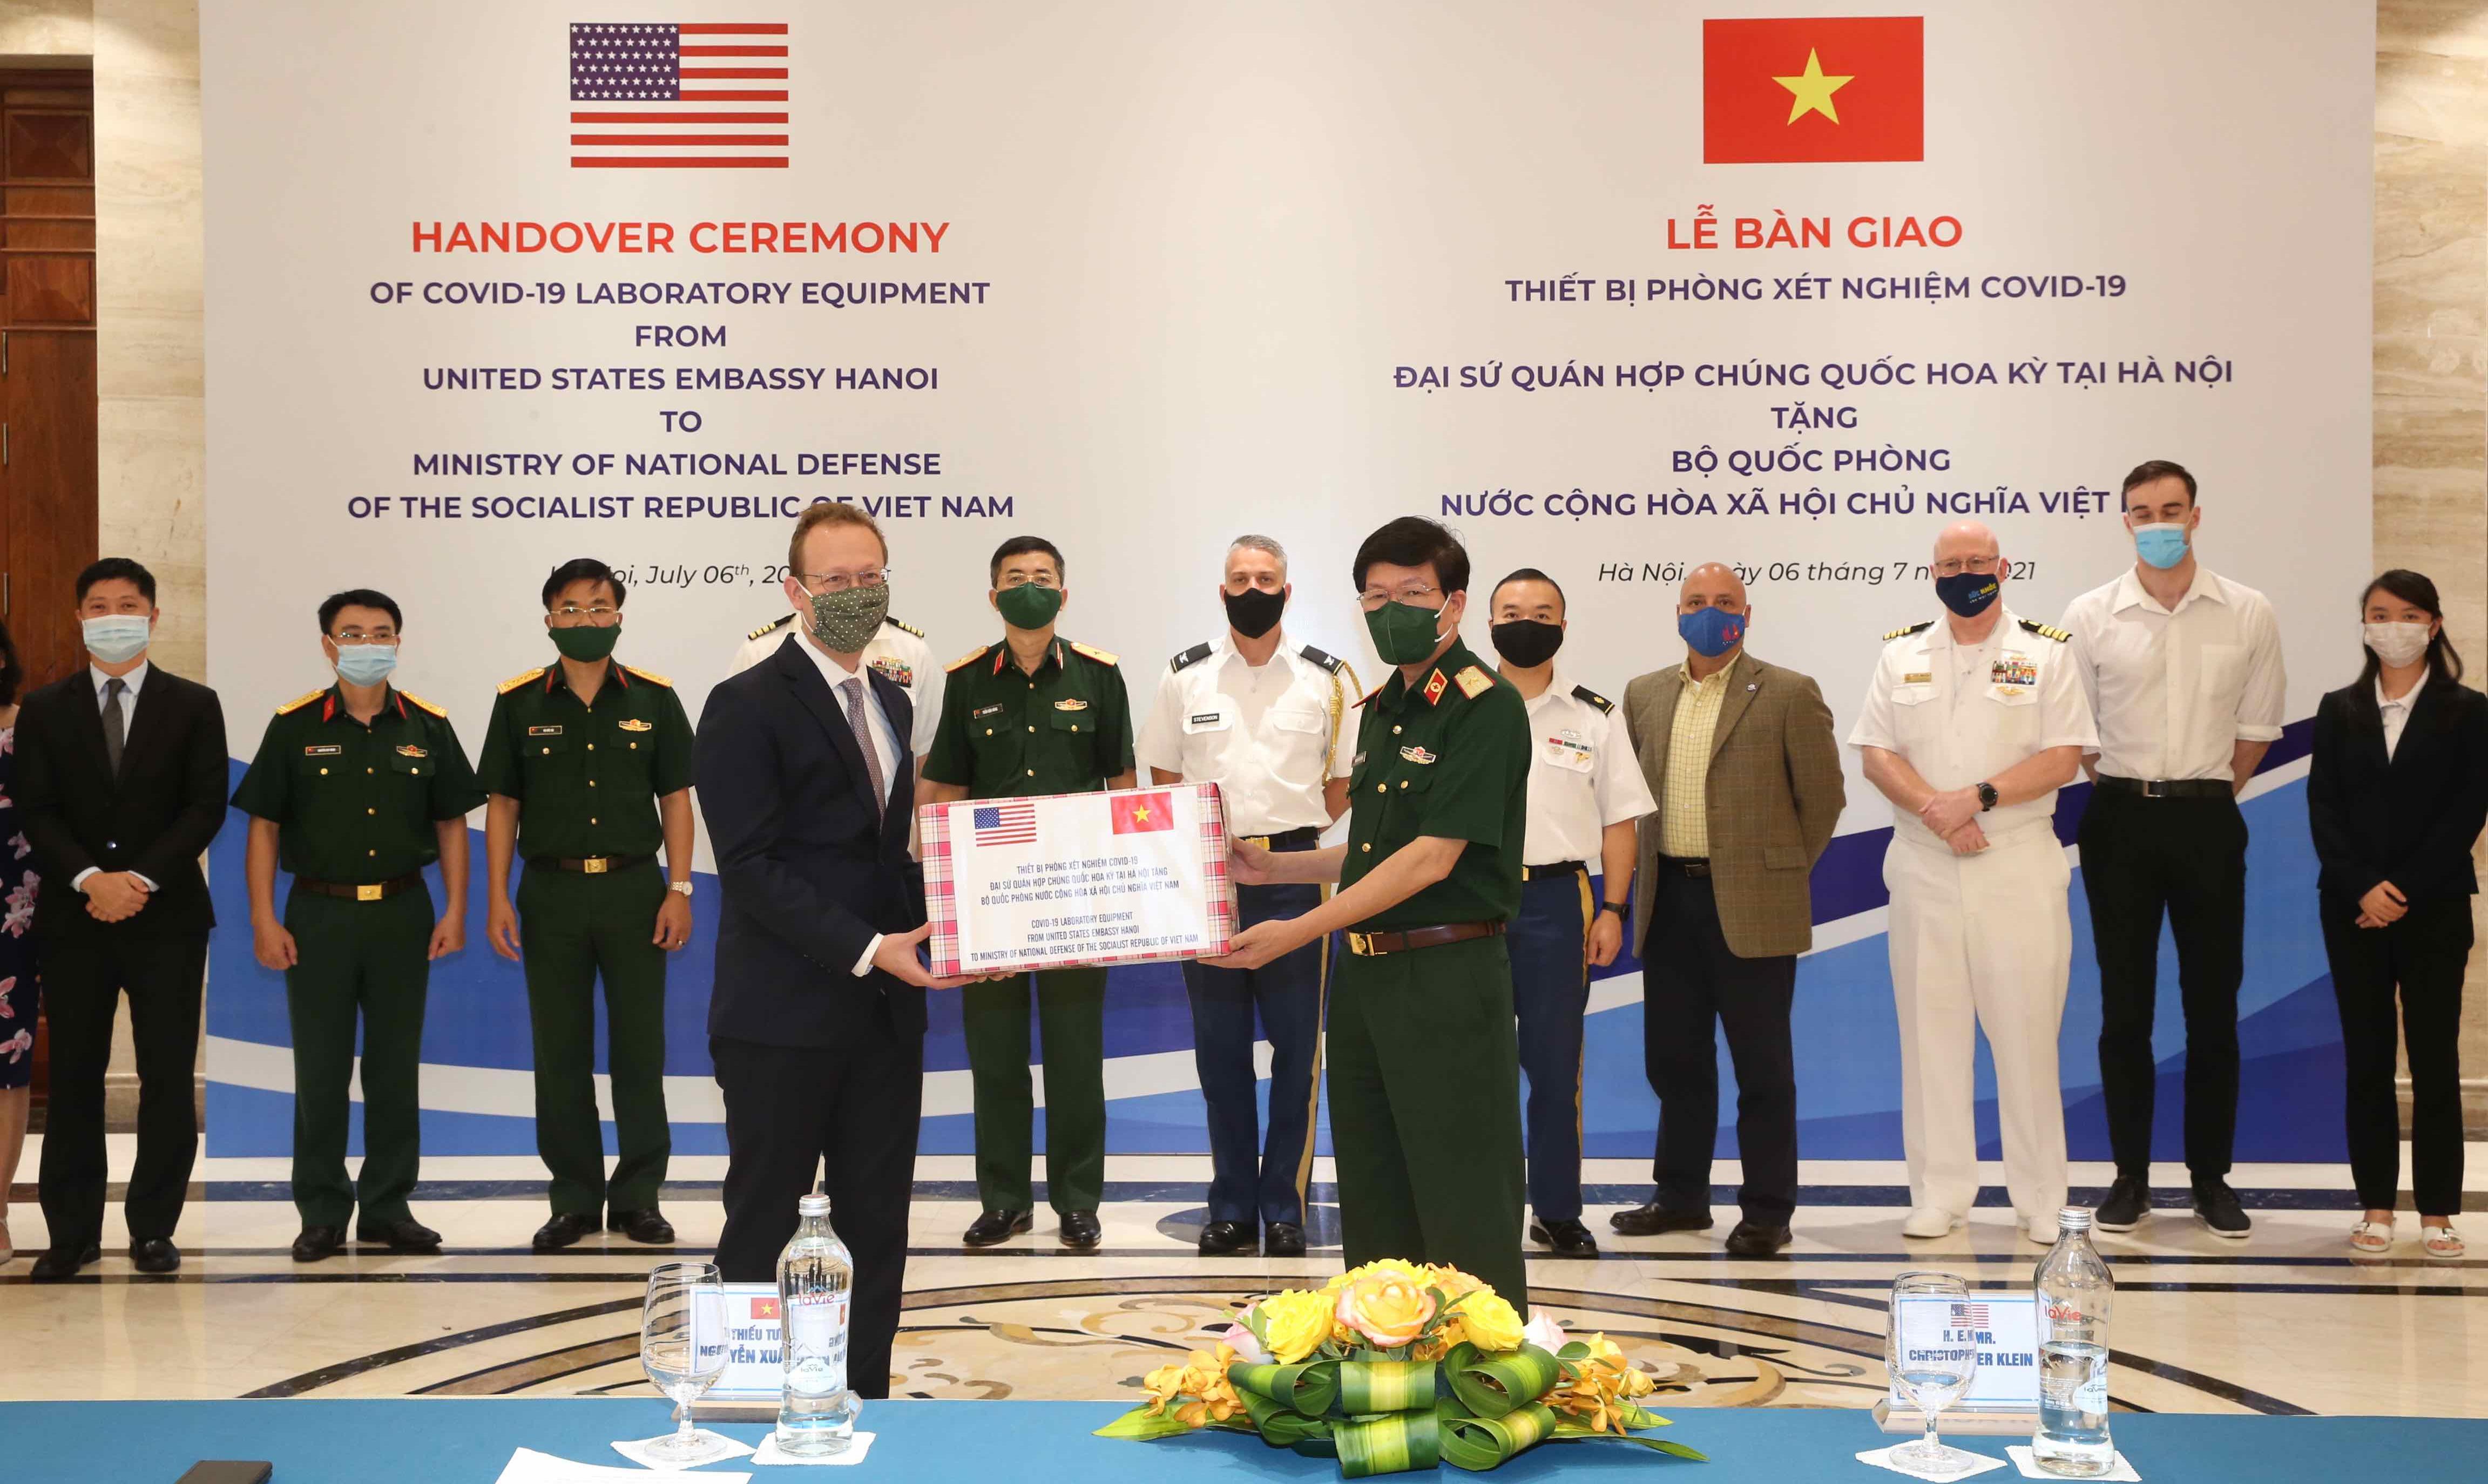 Đại biện lâm thời Christopher Klein trao thiết bị hỗ trợ của Bộ Quốc phòng Mỹ cho Thiếu tướng Nguyễn Xuân Kiên, Cục trưởng Cục Quân y - Bộ Quốc phòng Việt Nam.